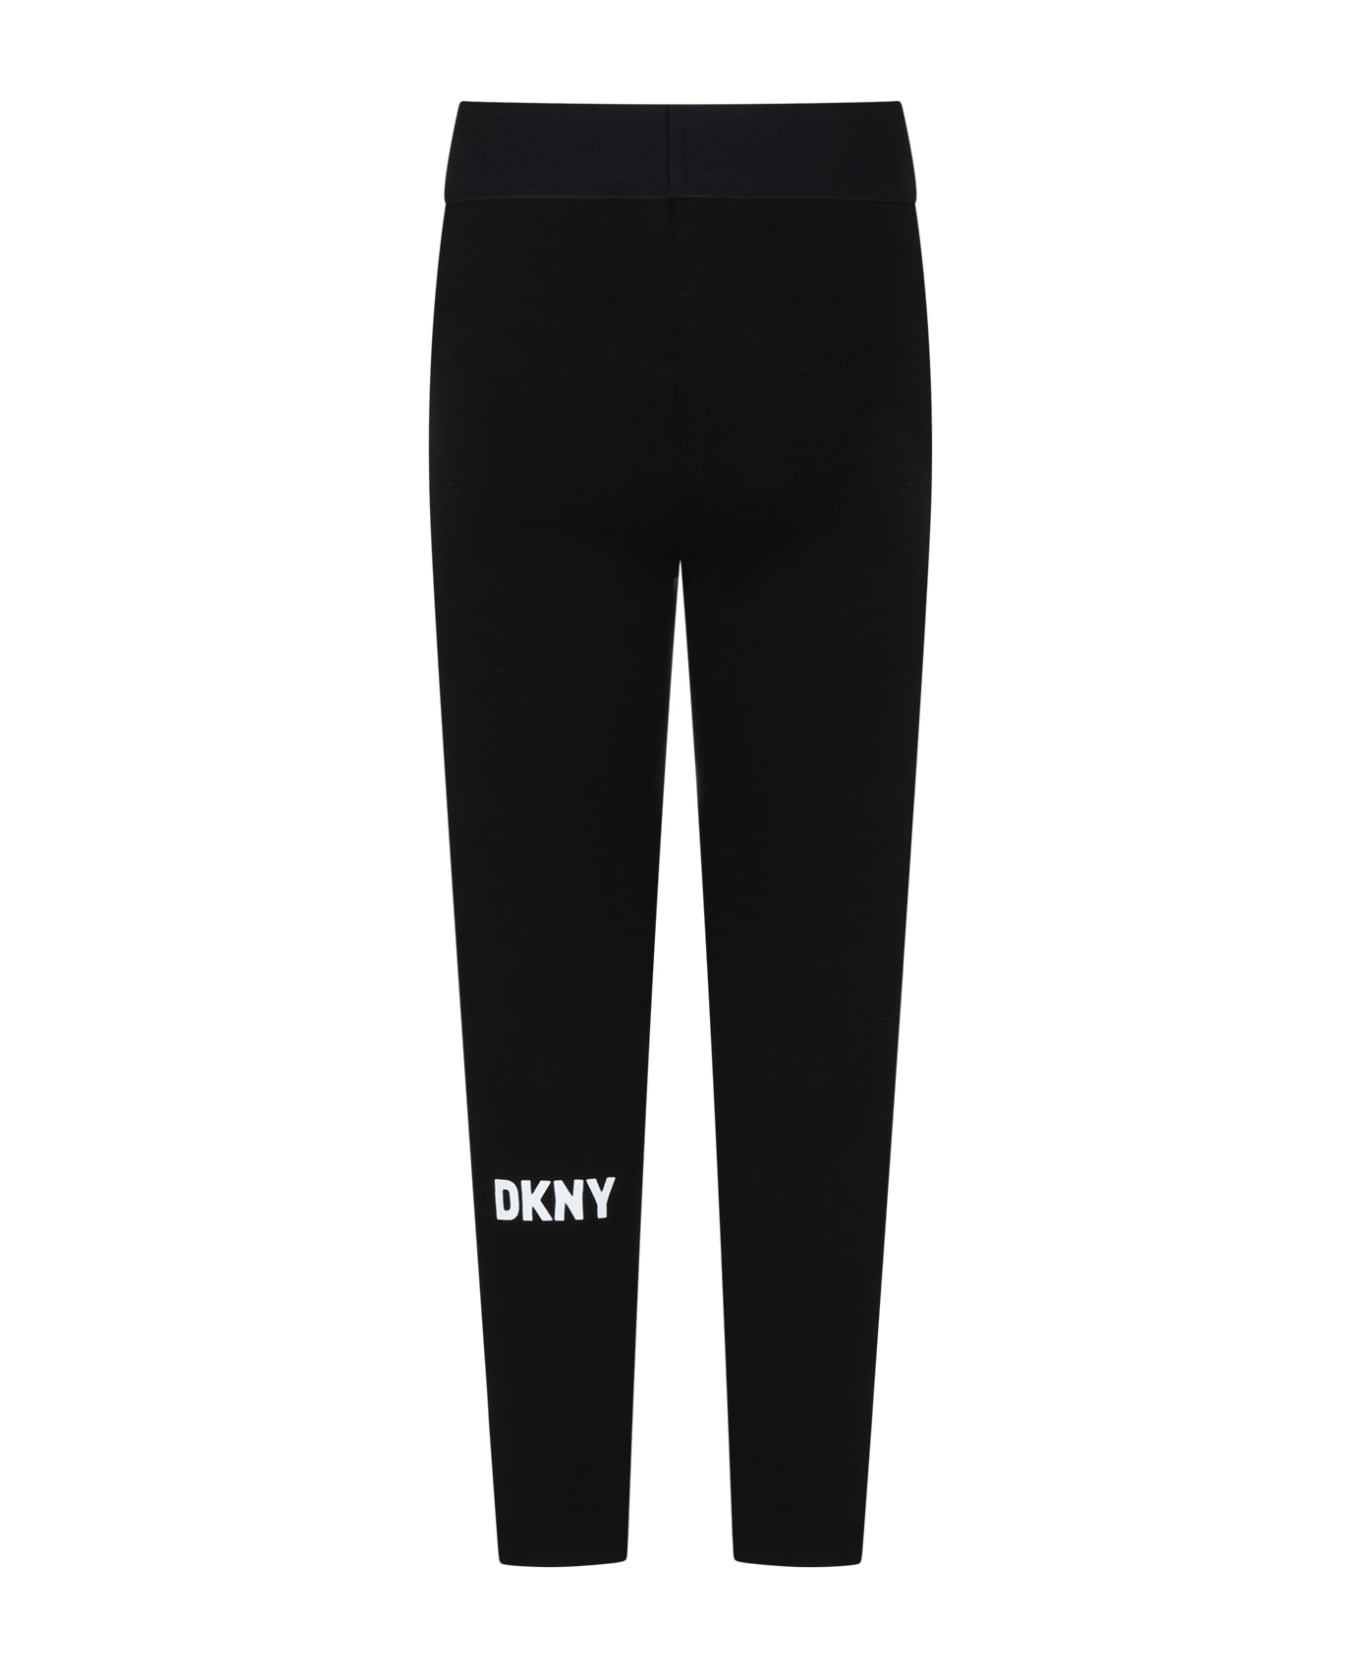 DKNY Black Leggings For Girl With Logo - B Nero